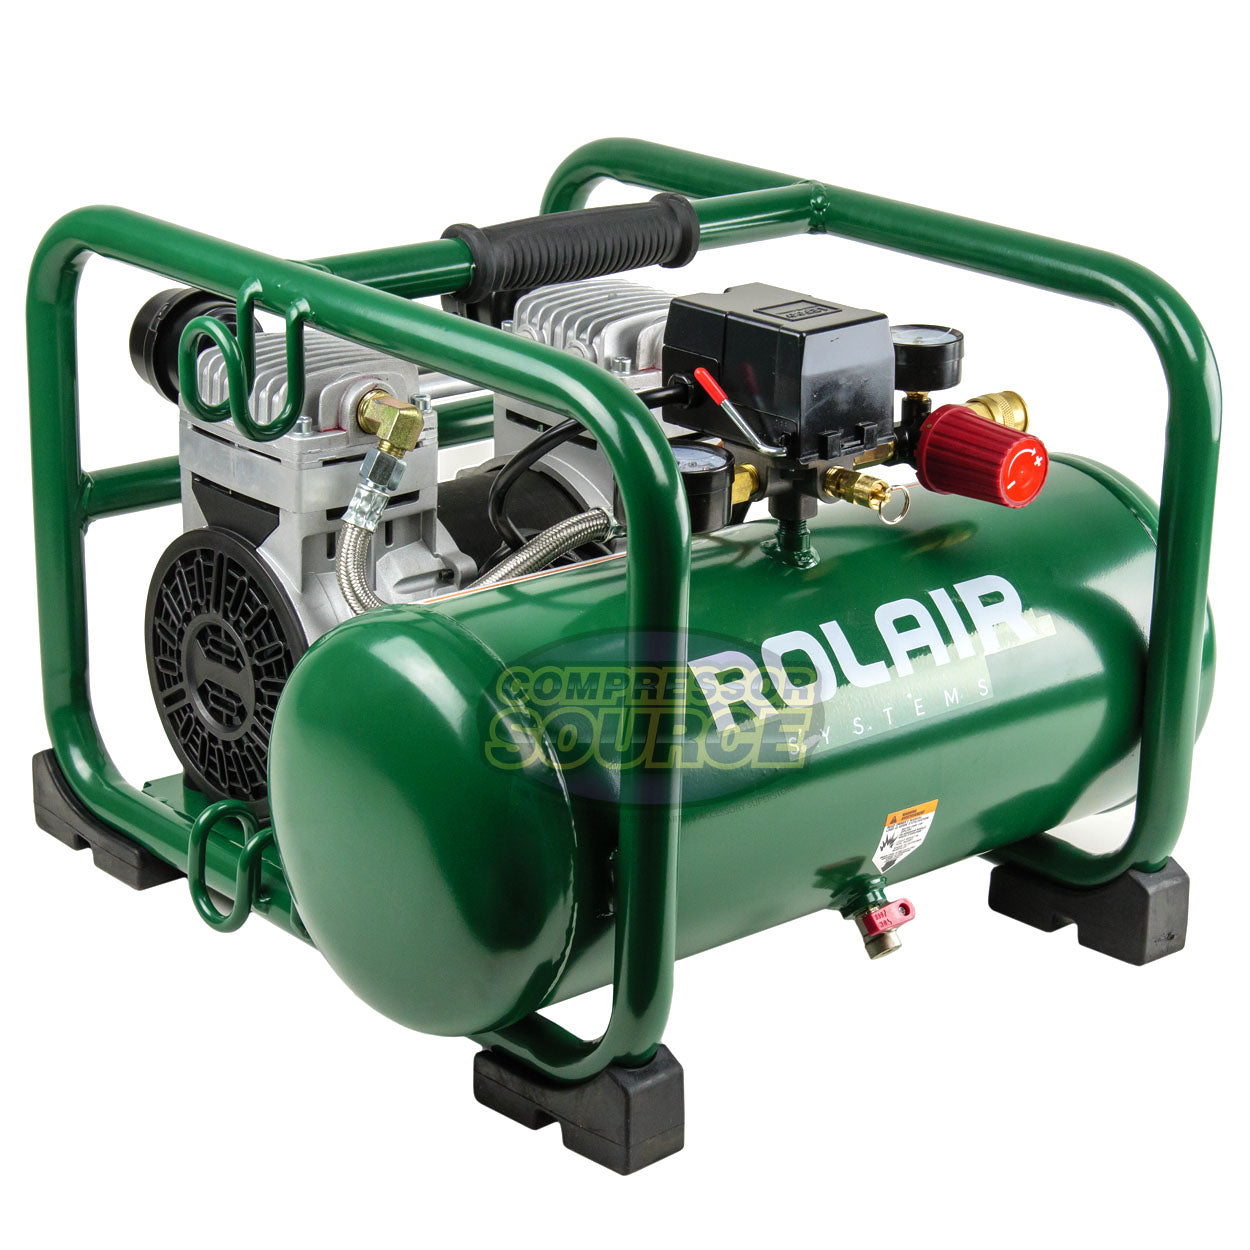 Rolair JC20 2HP 3 Gallon Oil-Less Electric Air Compressor